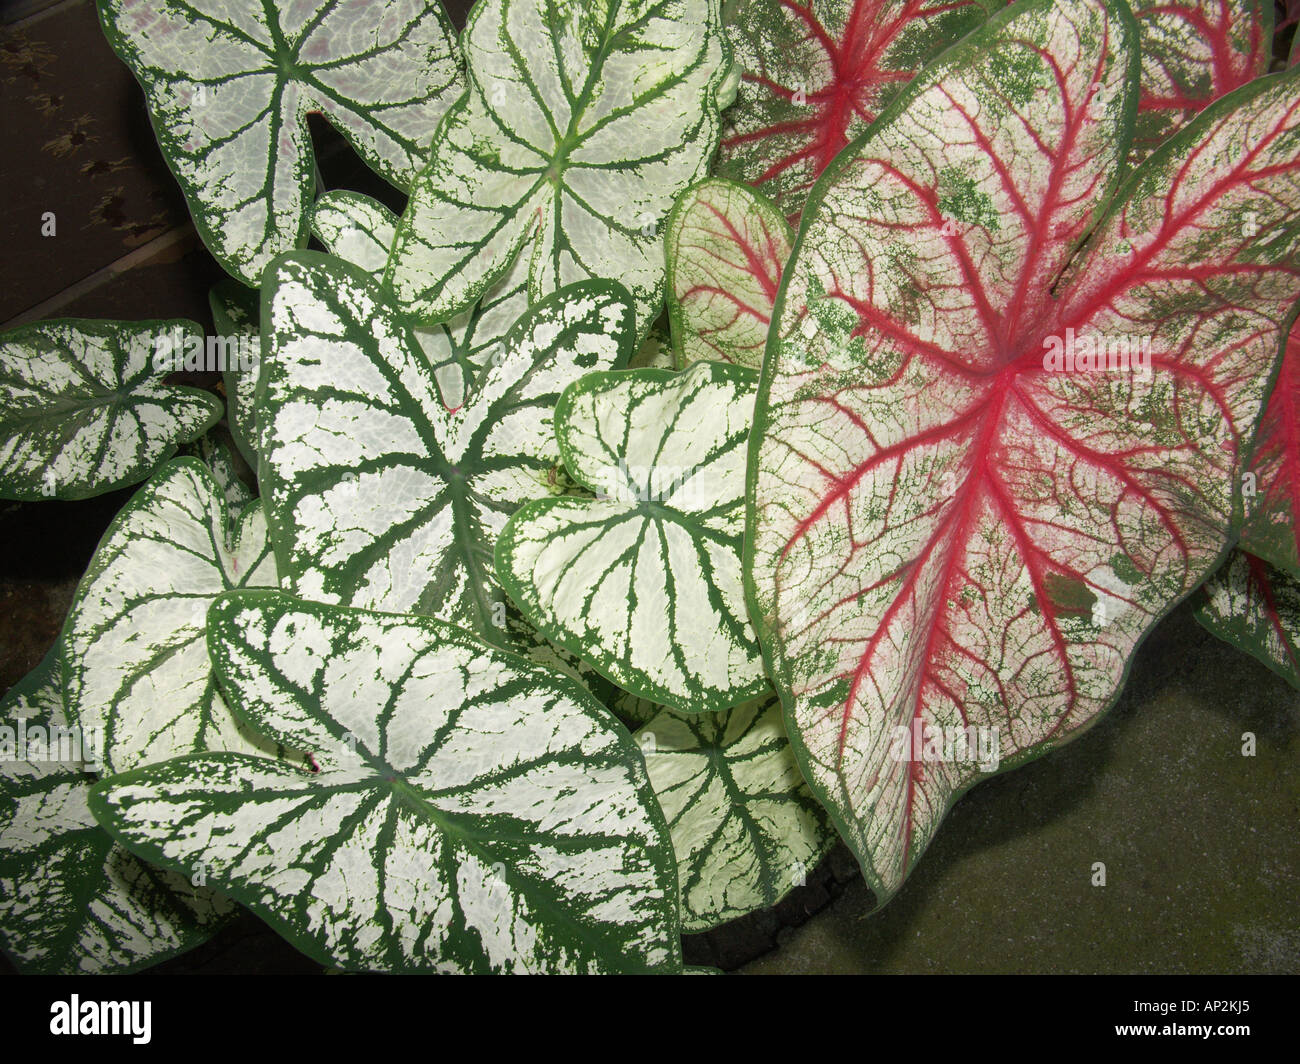 Caladium leaves Stock Photo